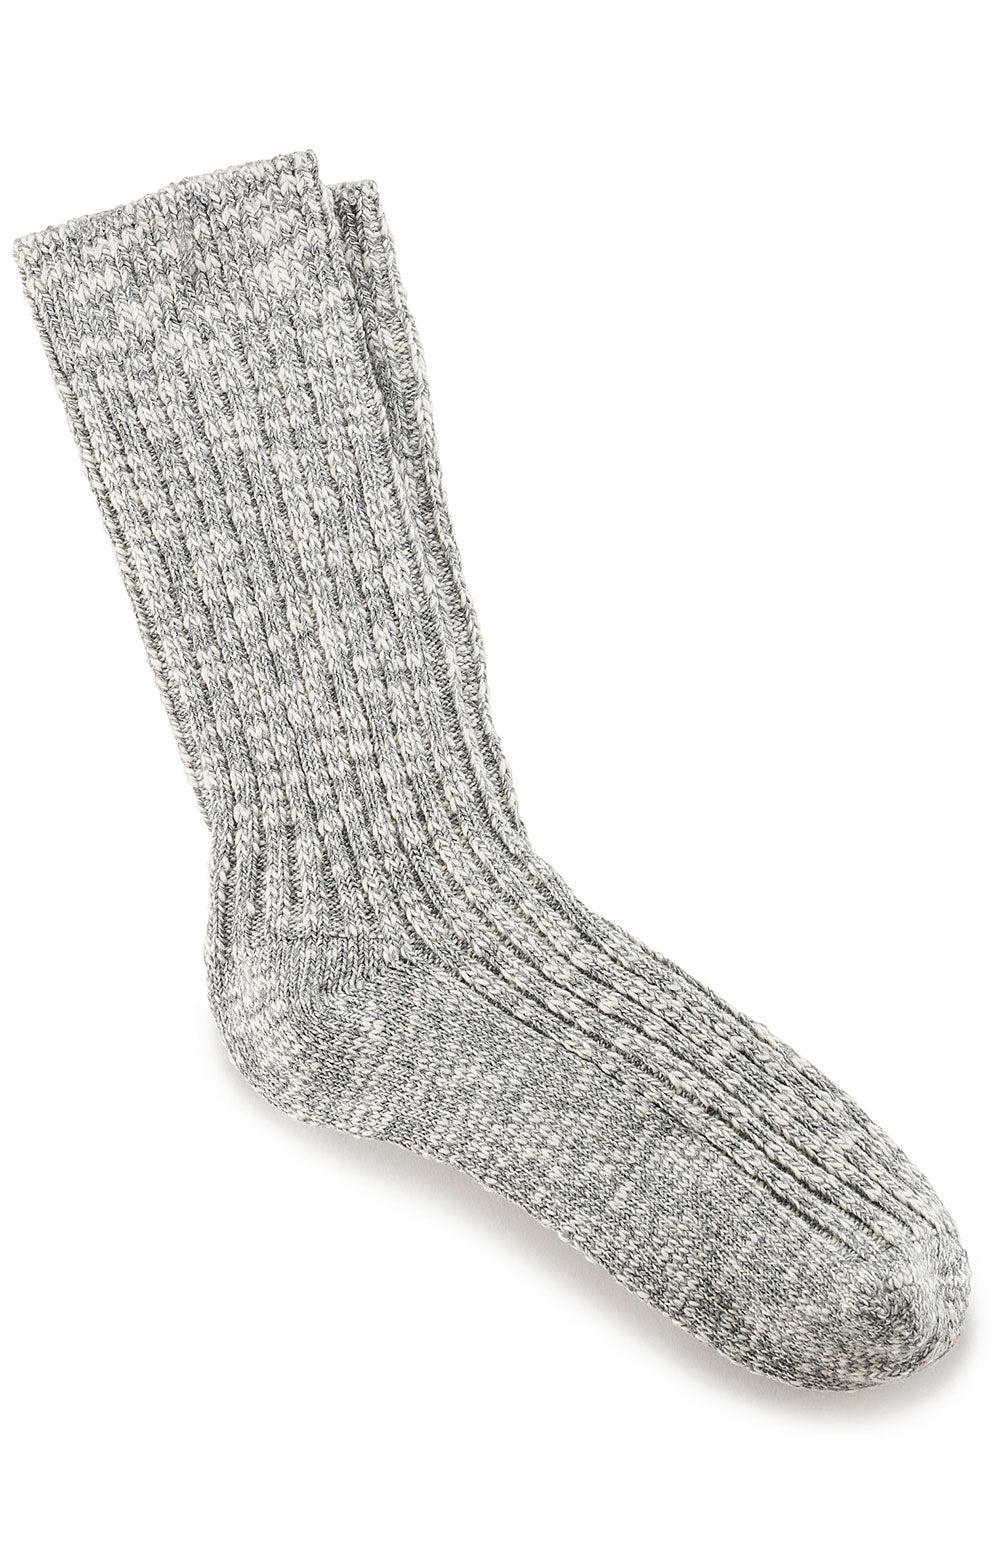 Cotton Slub Socks - Gray White